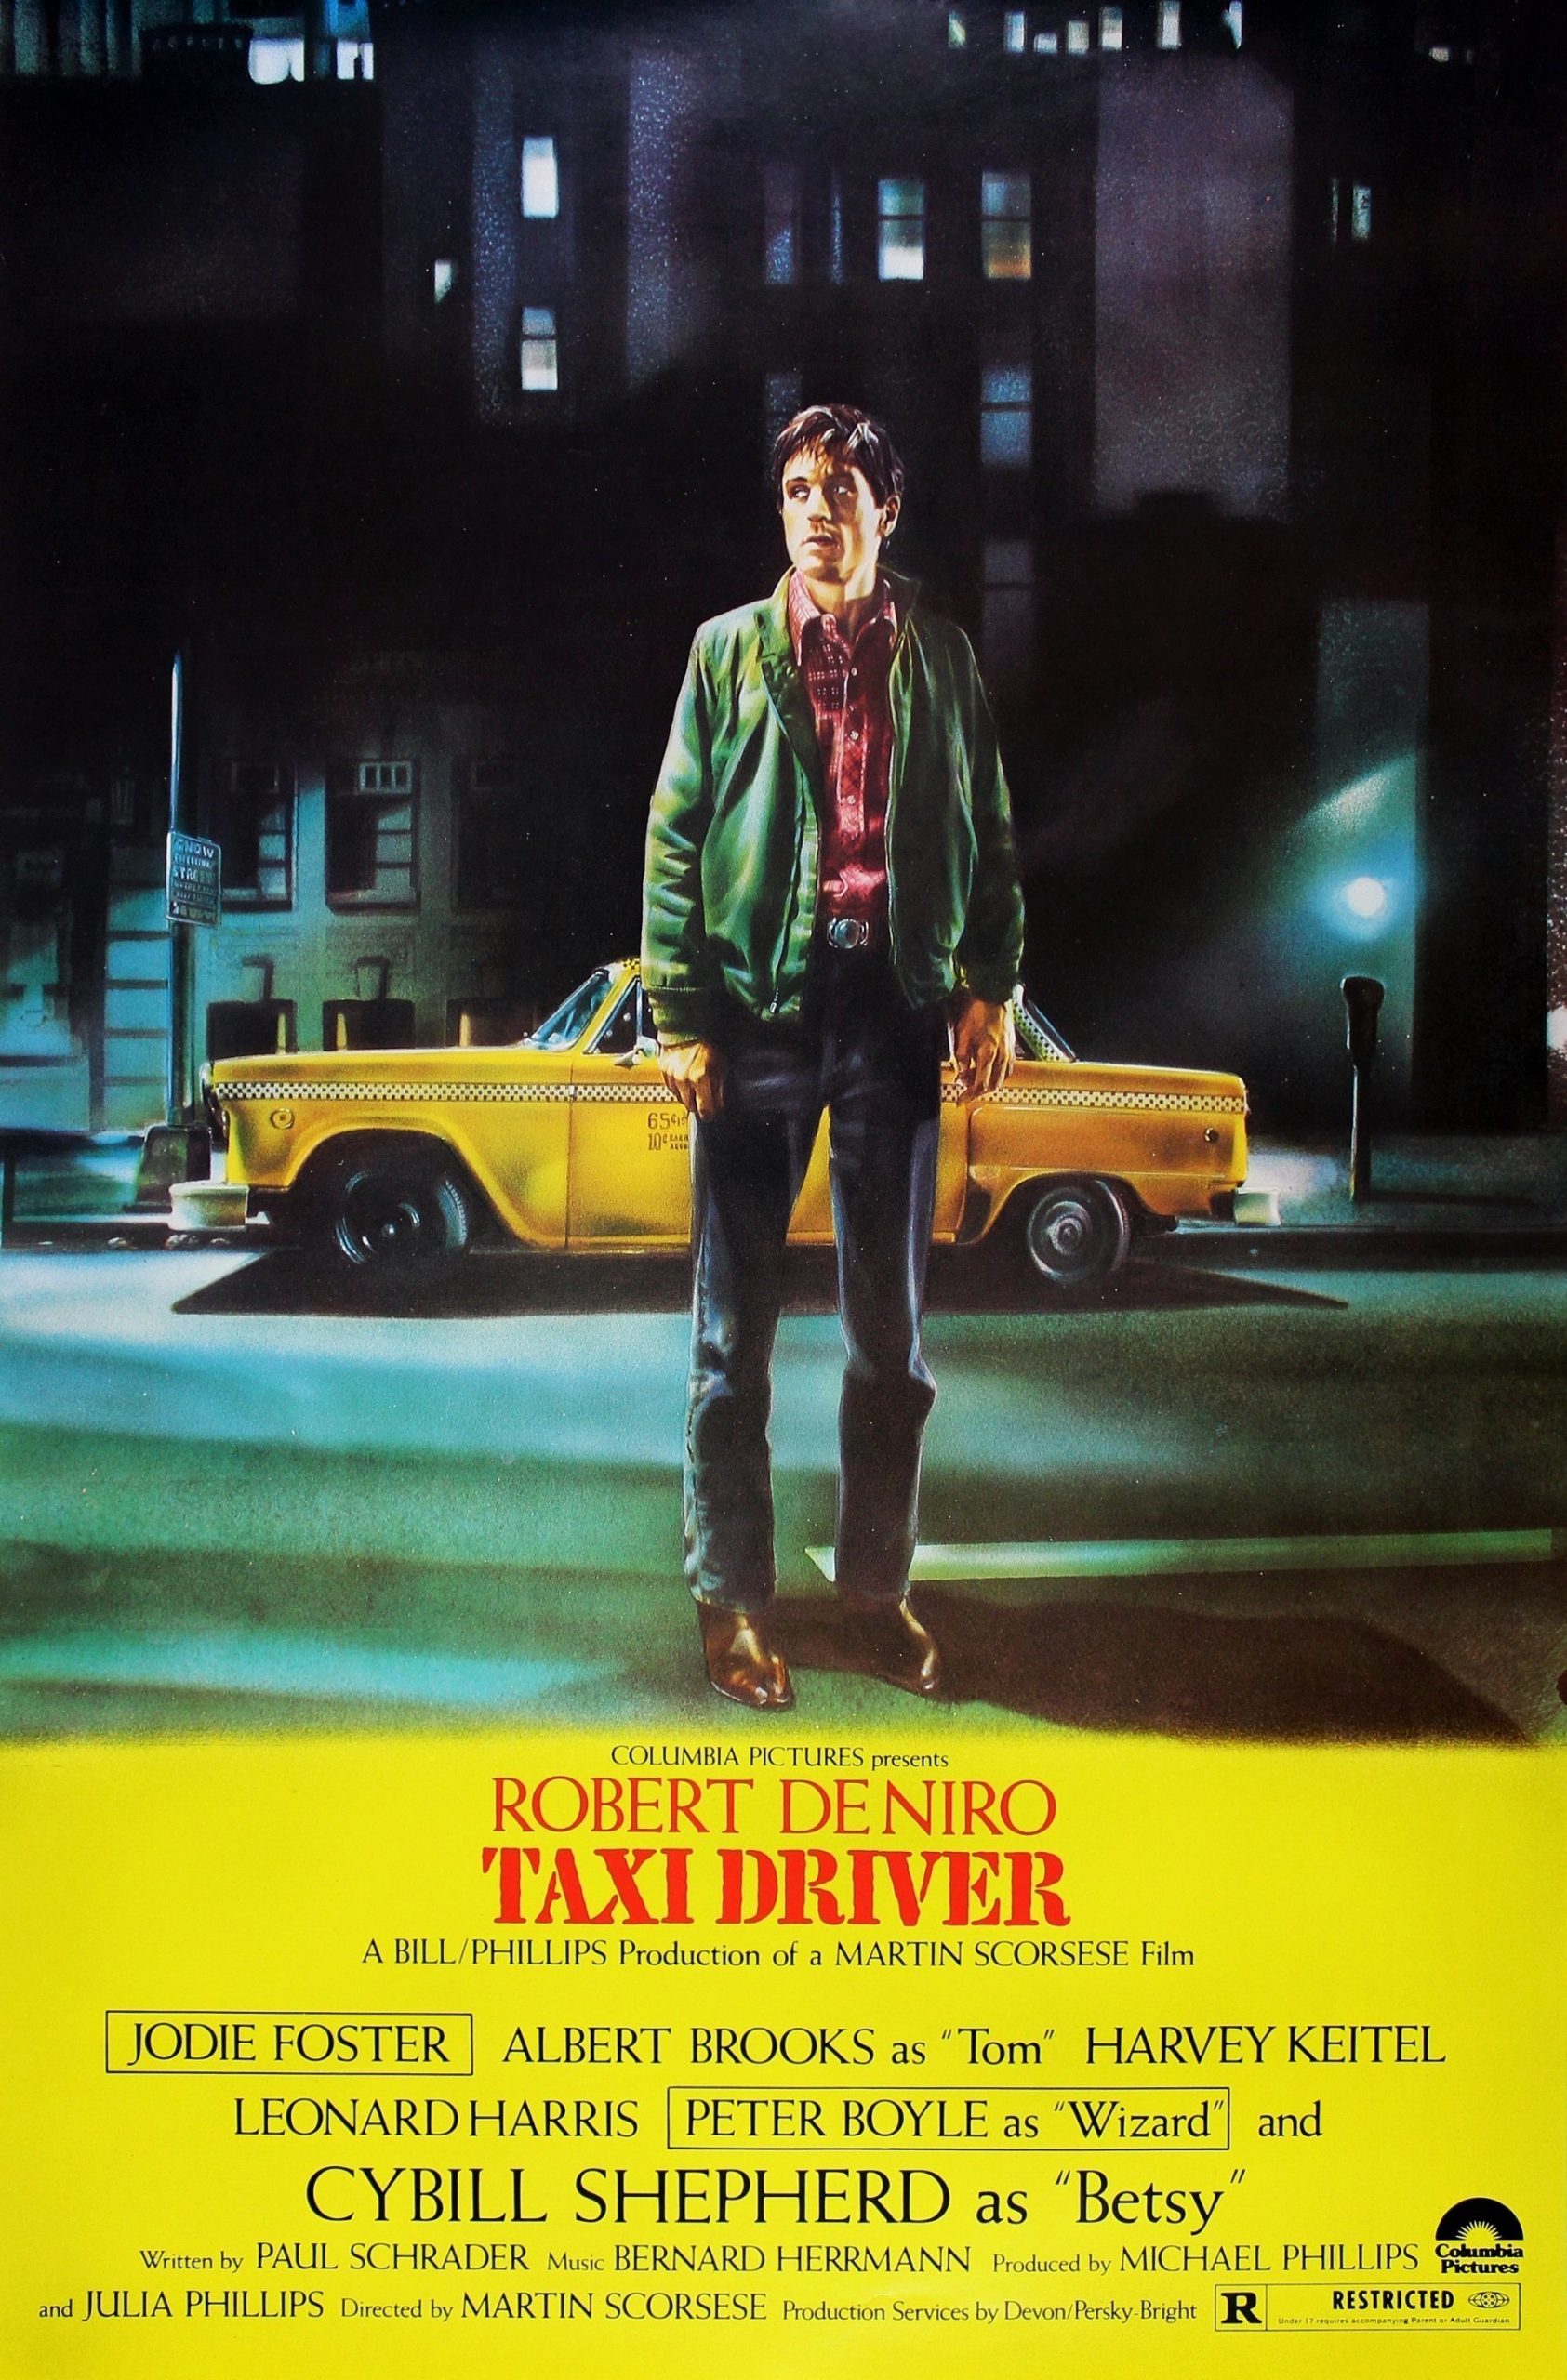 ดูหนังออนไลน์ Taxi Driver (1976) แท็กซี่มหากาฬ ดูหนังชนโรงฟรี